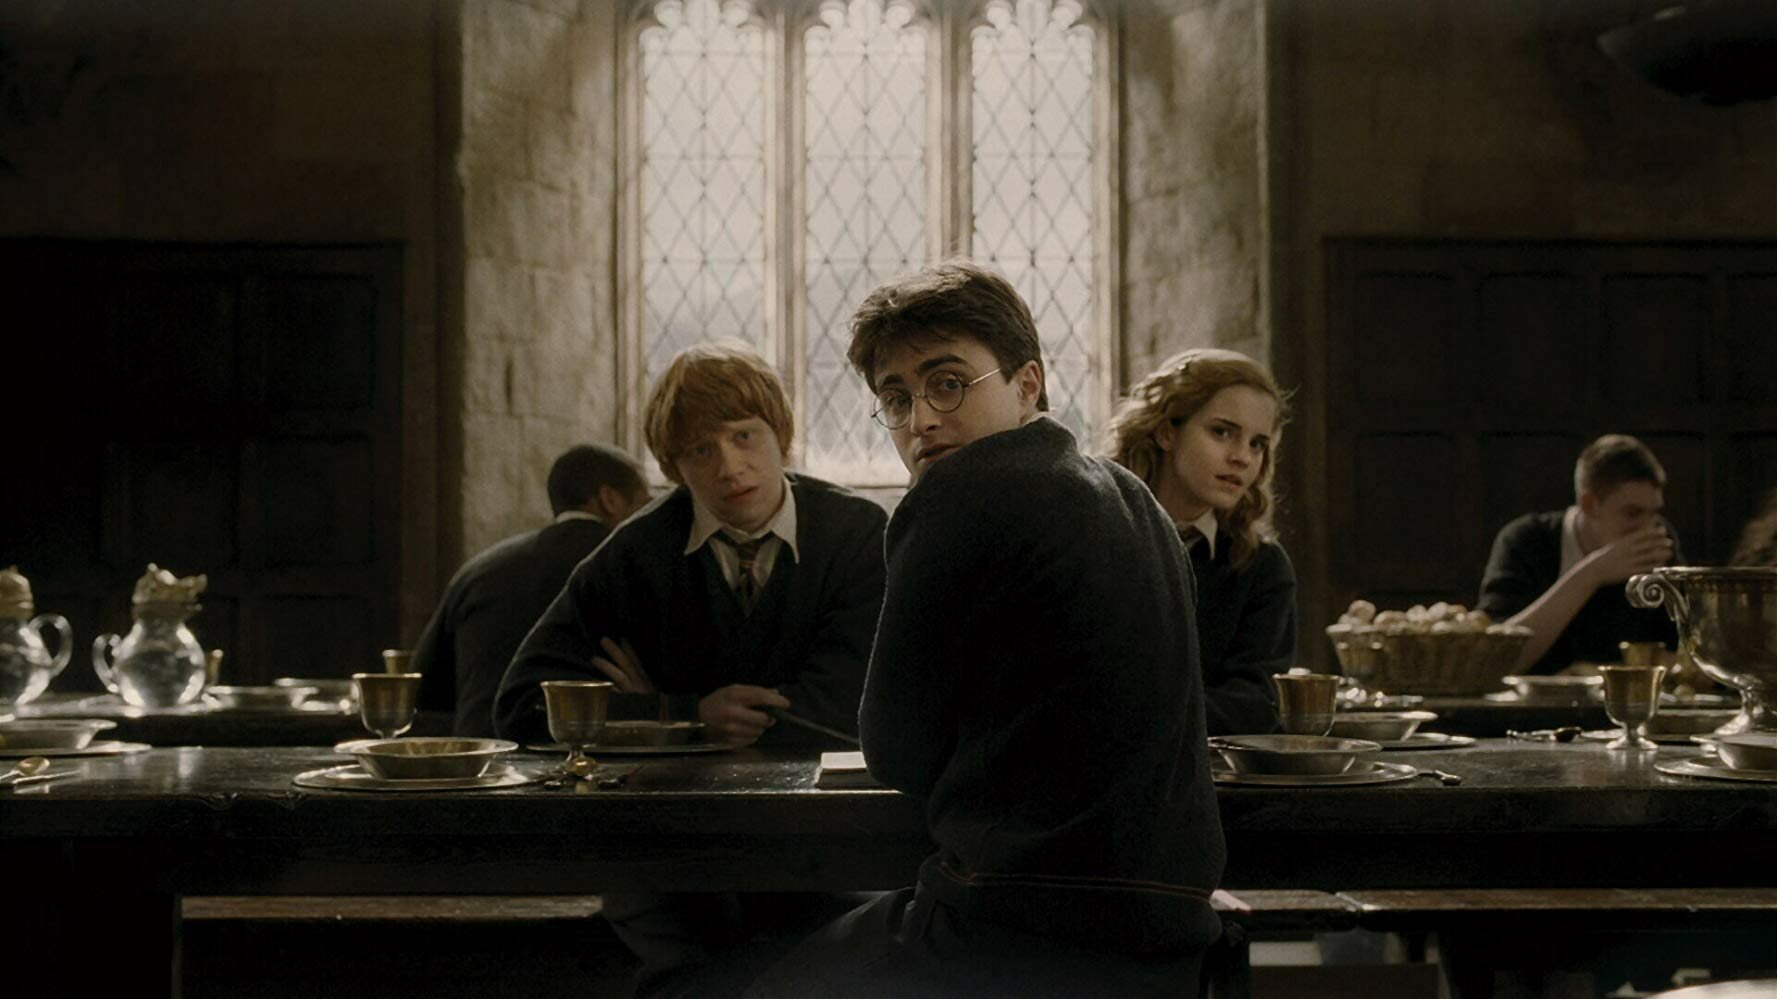 Test Wiedzy O Harrym Potterze Test wiedzy o Harrym Potterze. Możesz się nazywać prawdziwym fanem? - Quizy